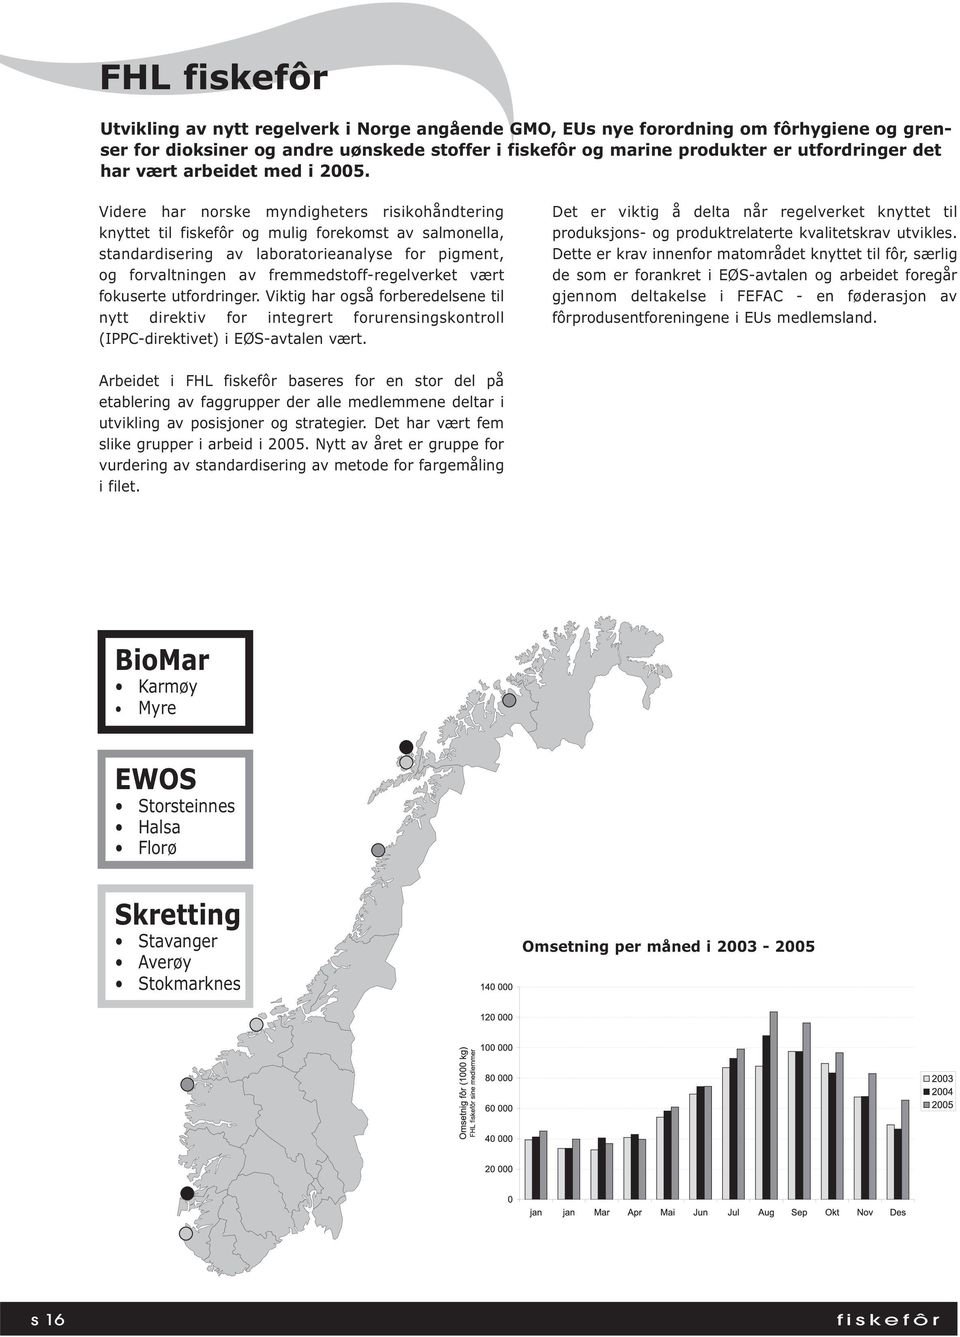 Videre har norske myndigheters risikohåndtering knyttet til fiskefôr og mulig forekomst av salmonella, standardisering av laboratorieanalyse for pigment, og forvaltningen av fremmedstoff-regelverket